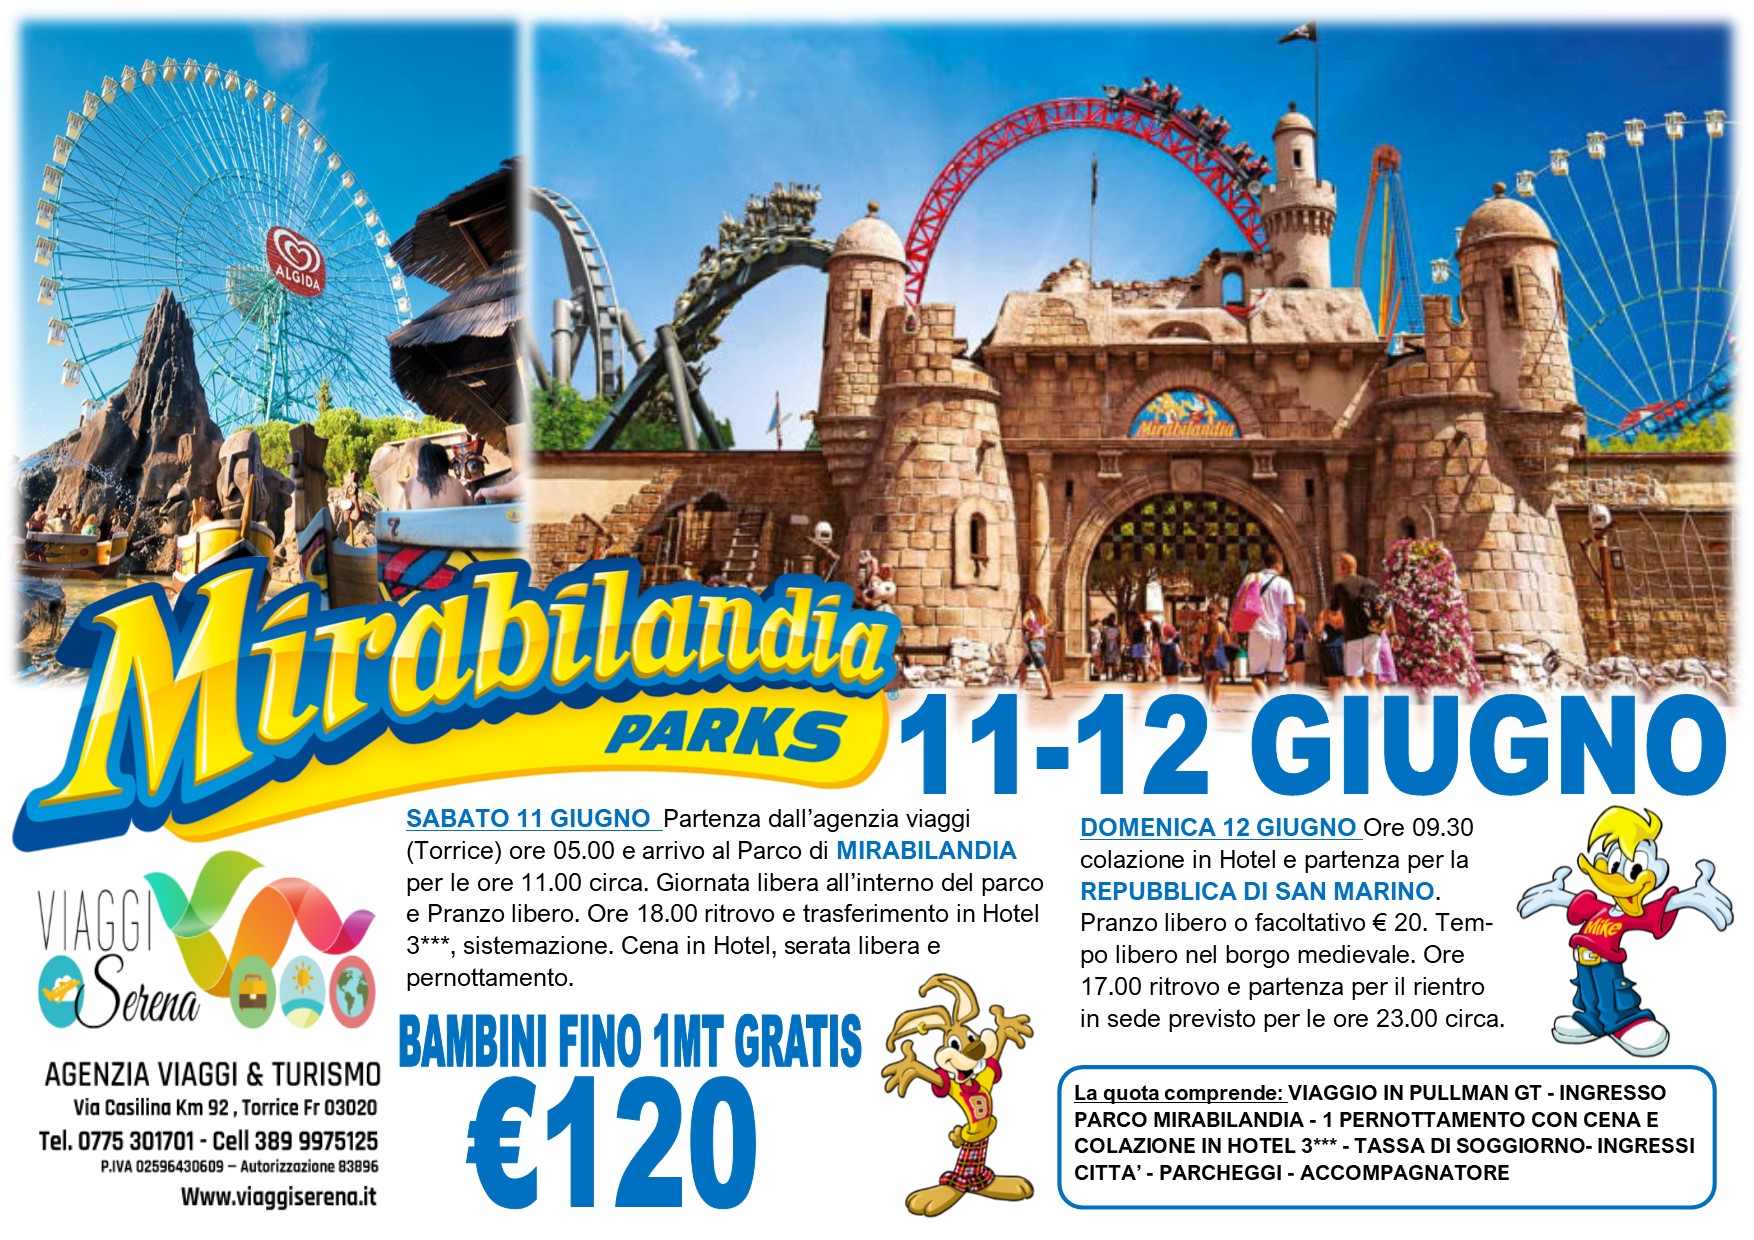 Viaggi di Gruppo: Parco di MIRABILANDIA & San Marino 11-12 Giugno €120,00